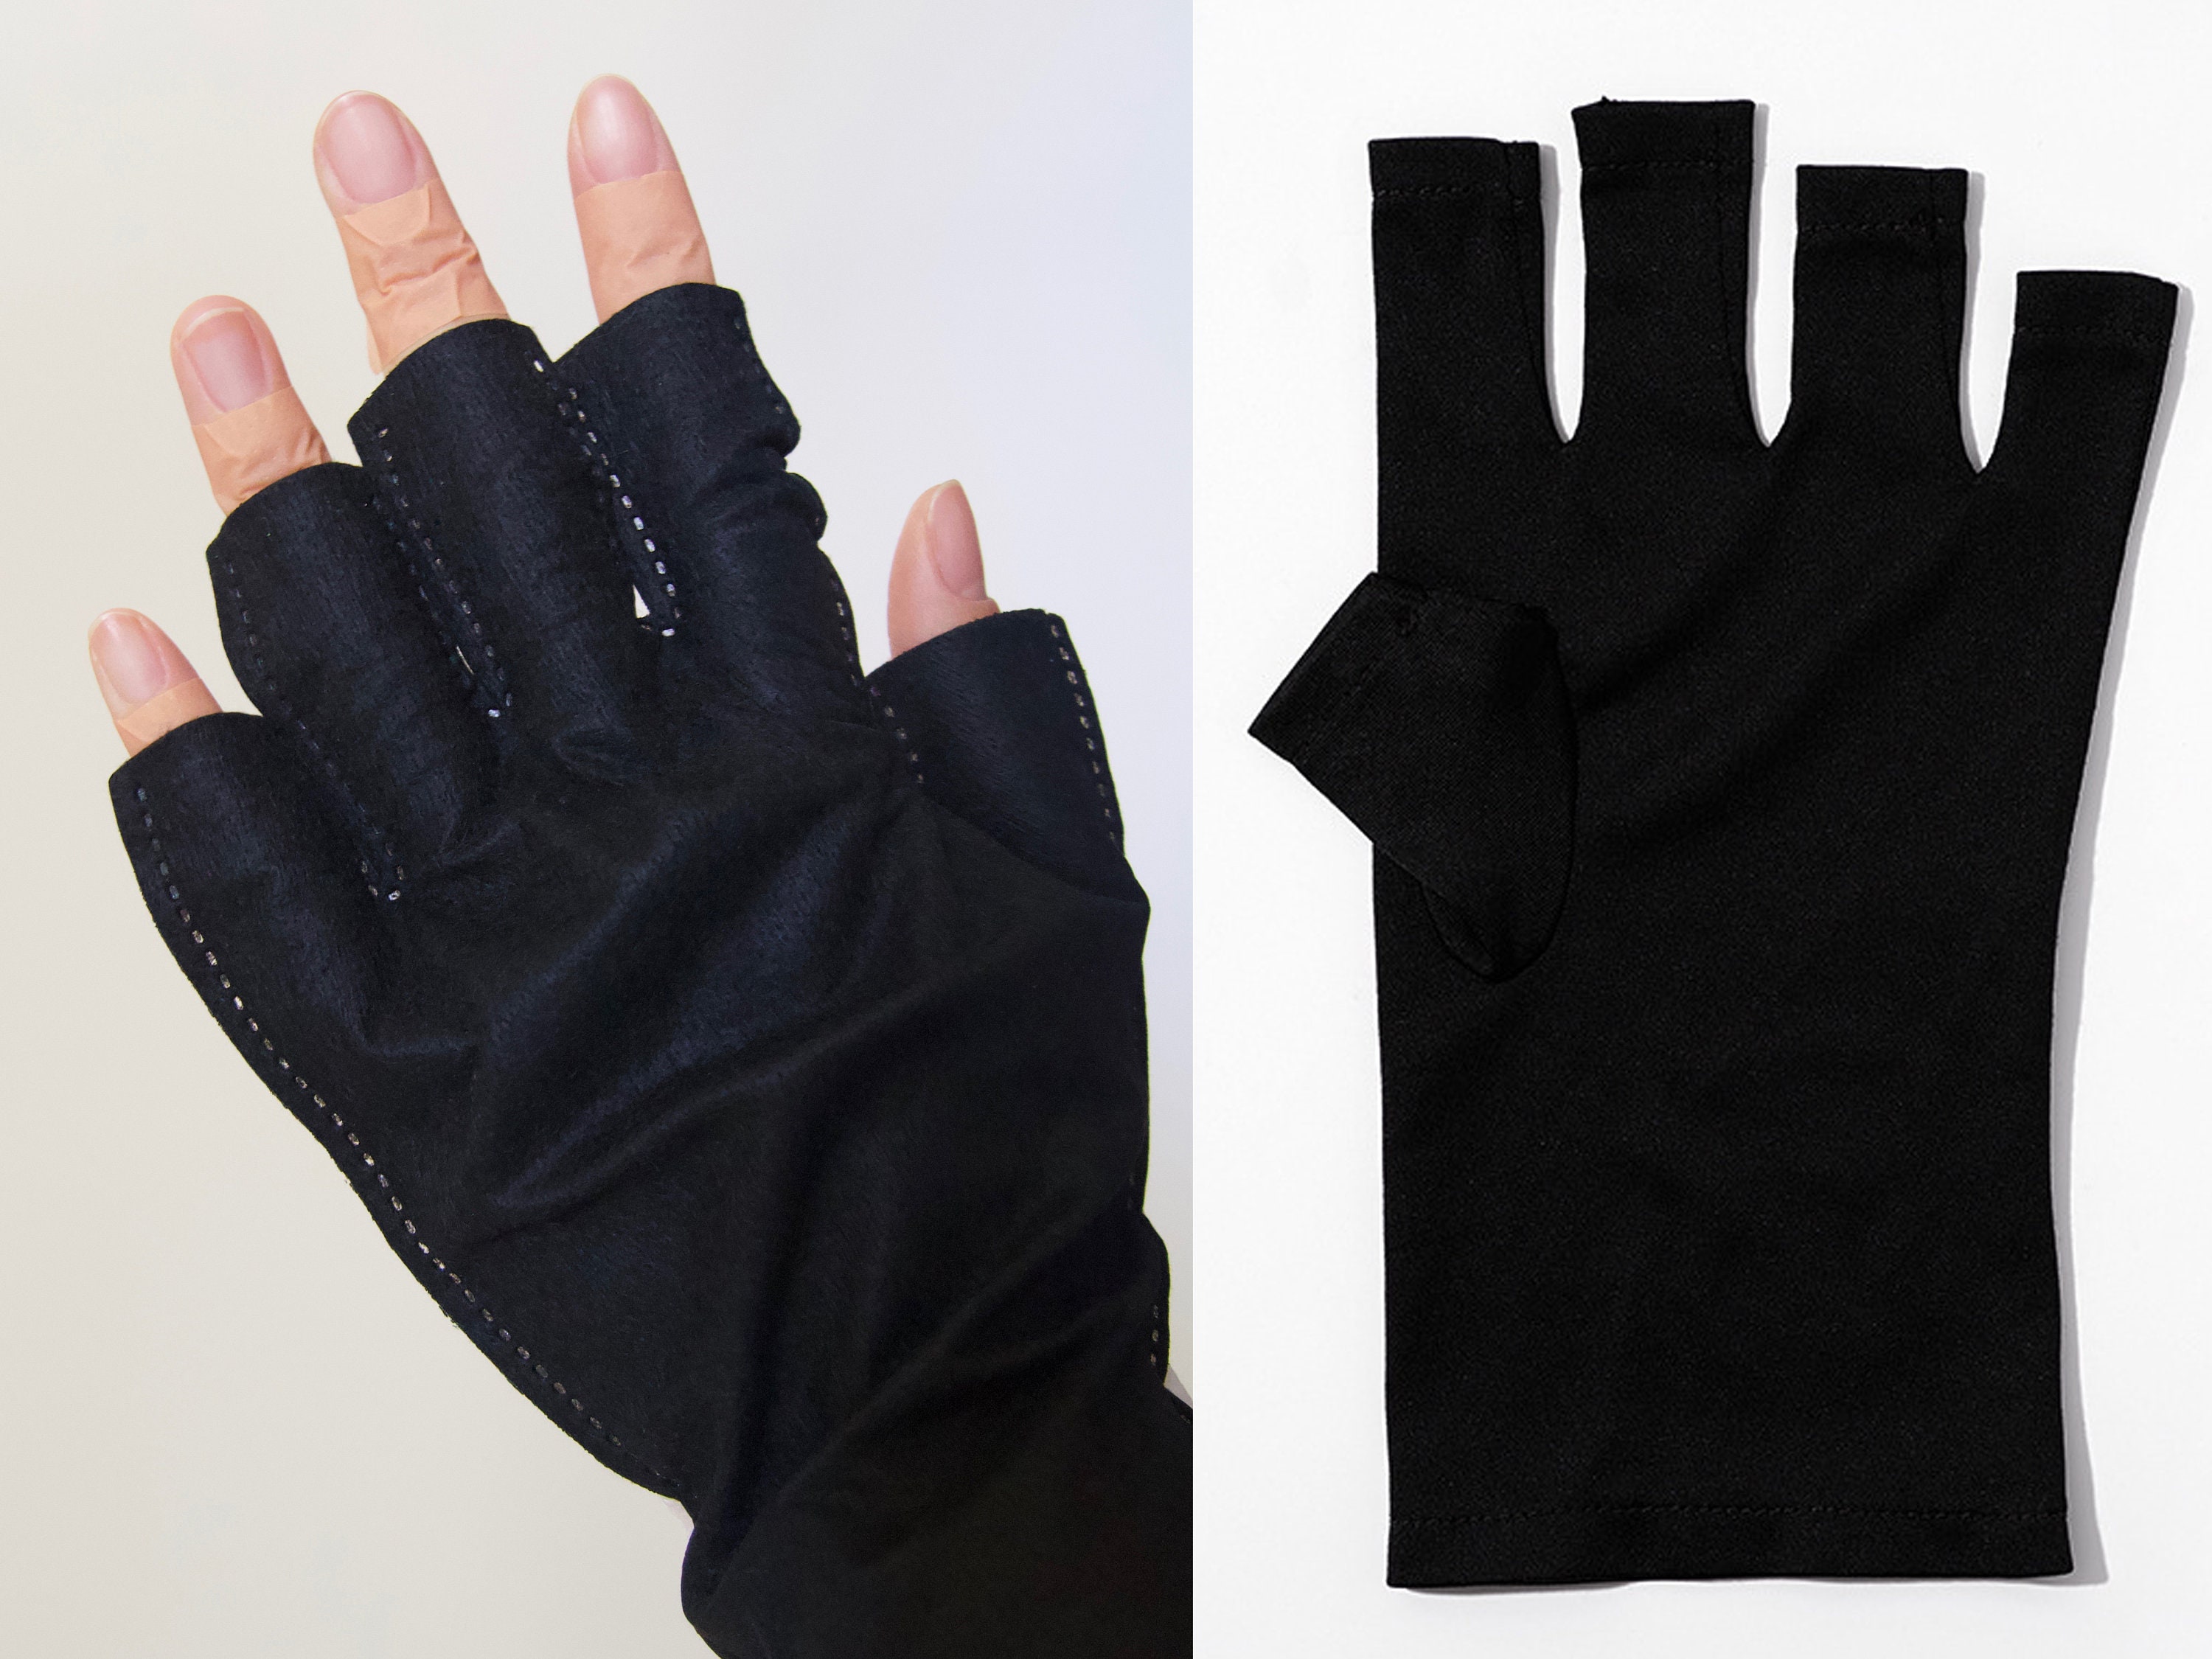 Gant de protection UV de manucure Tbest, gants de protection UV